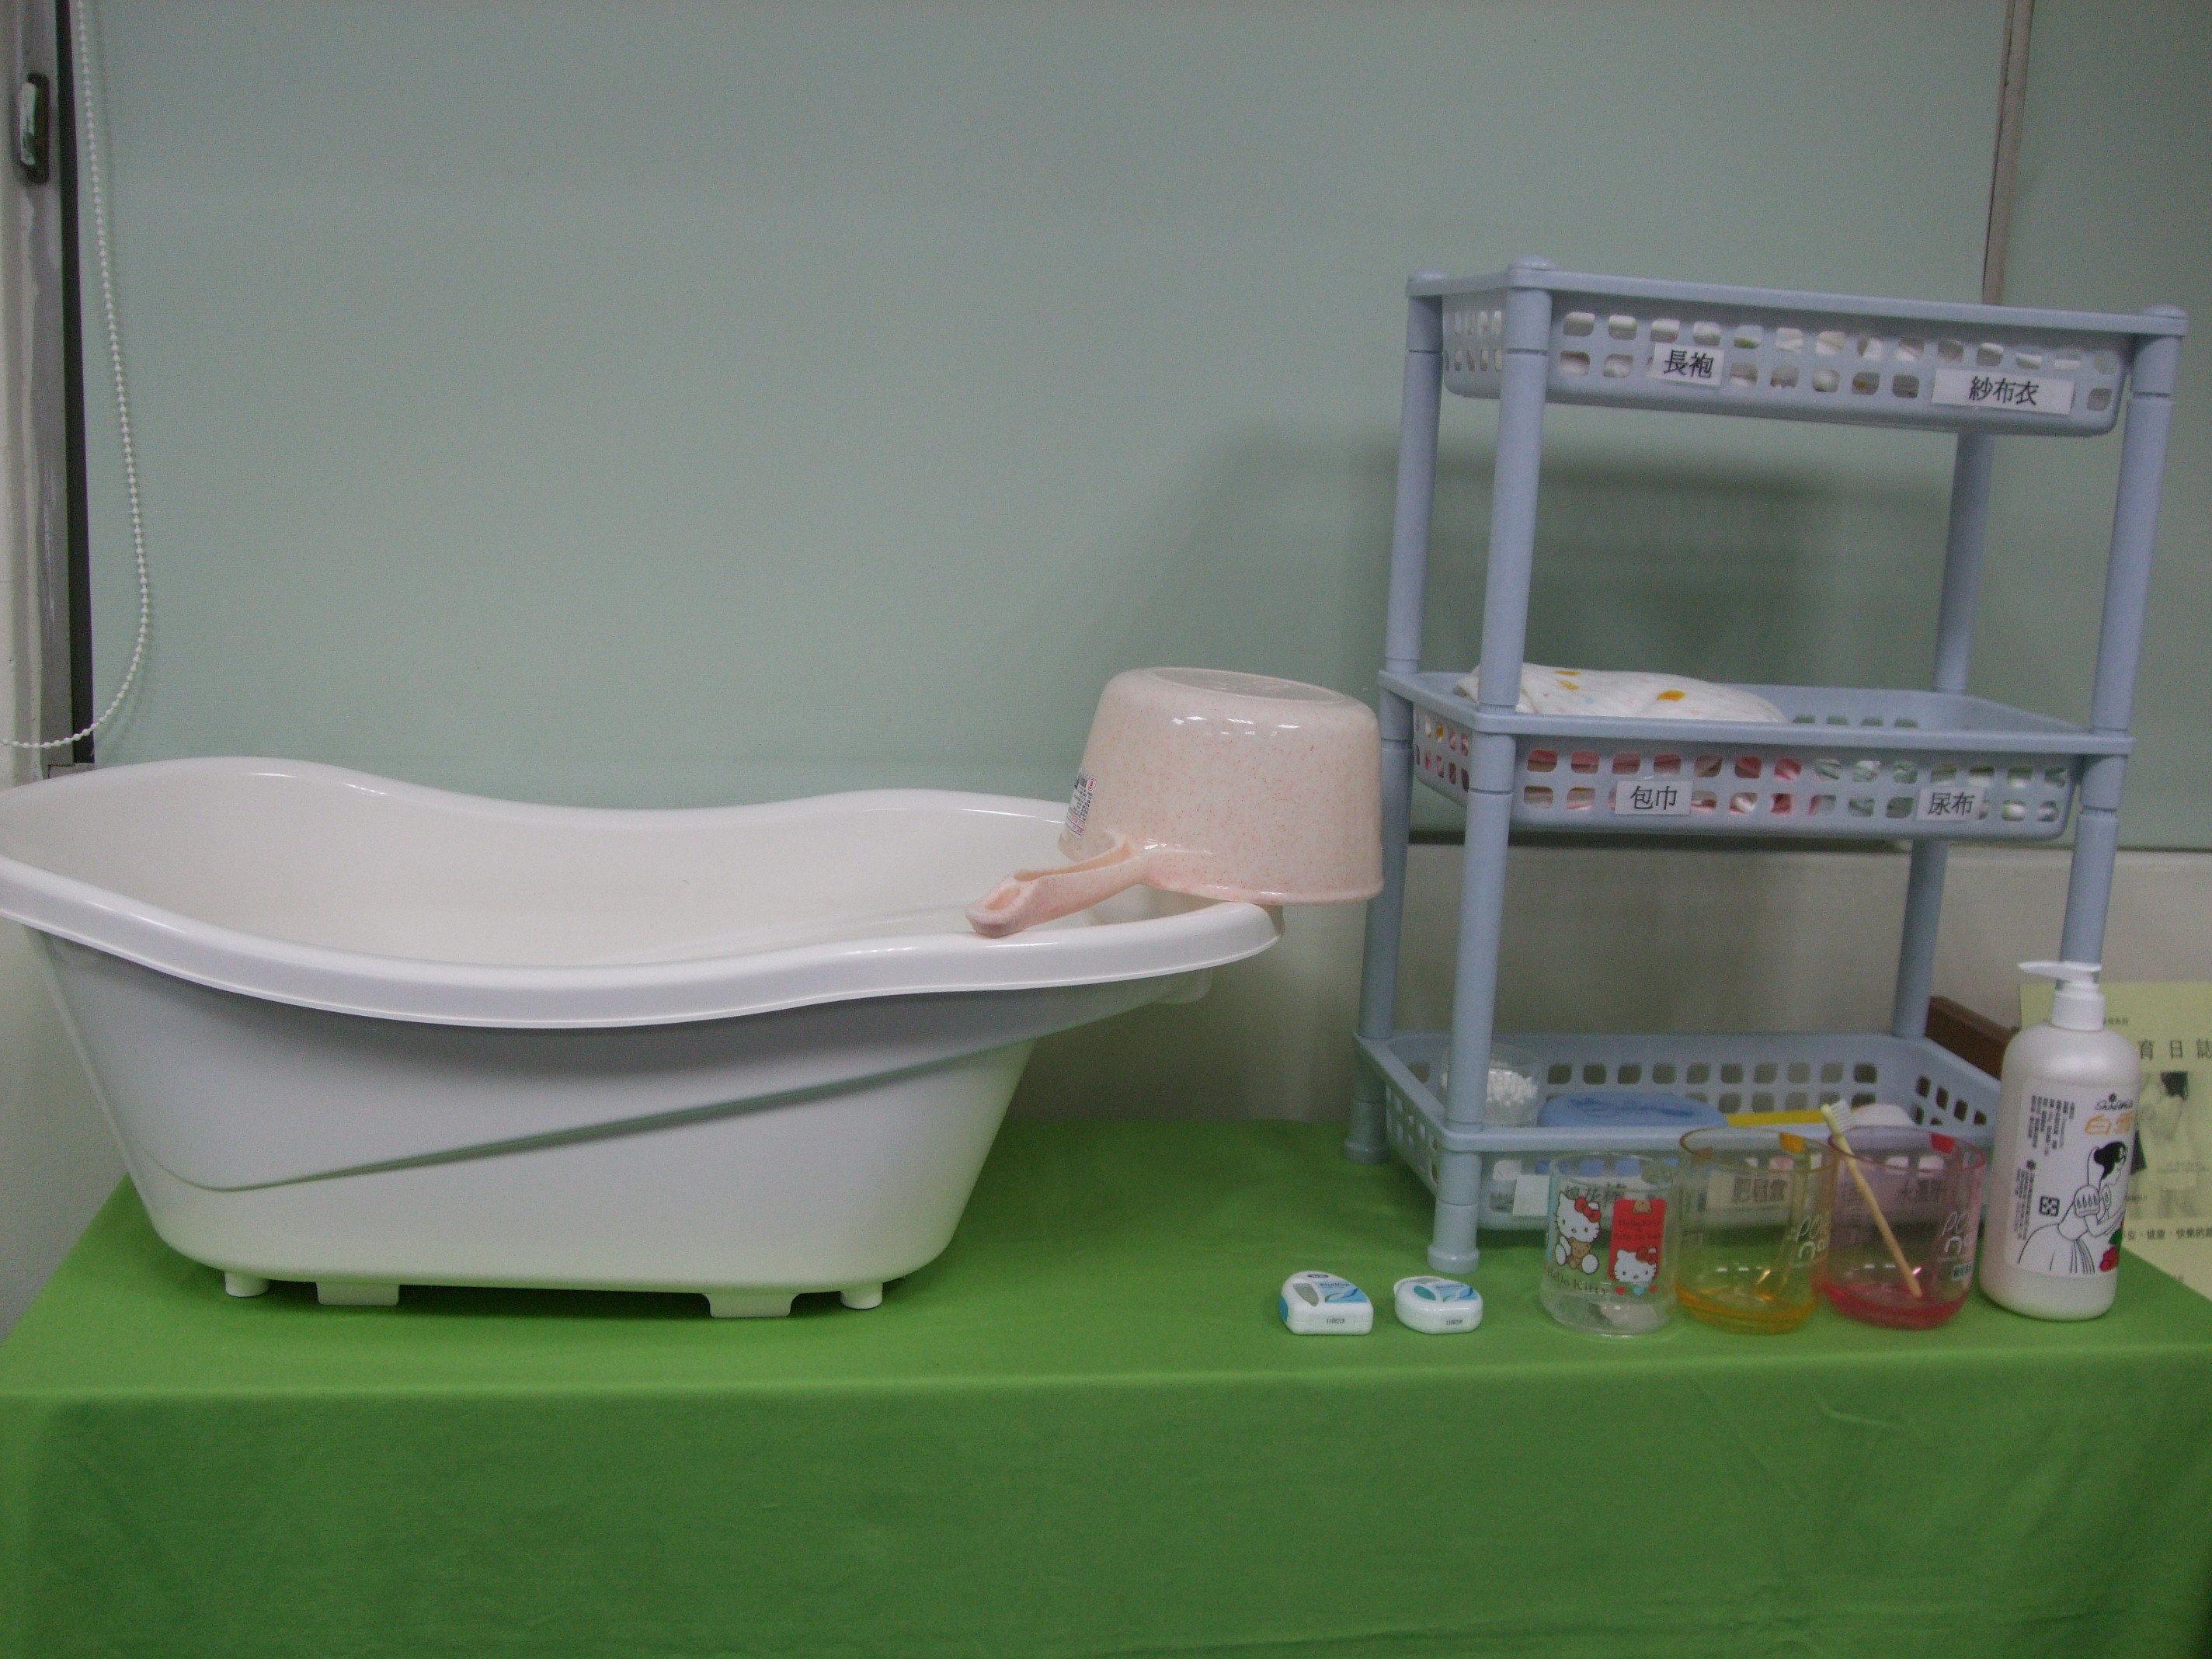 嬰兒照護室 (B303)：嬰兒模組相關課程 托育服務 家庭托育課程使用